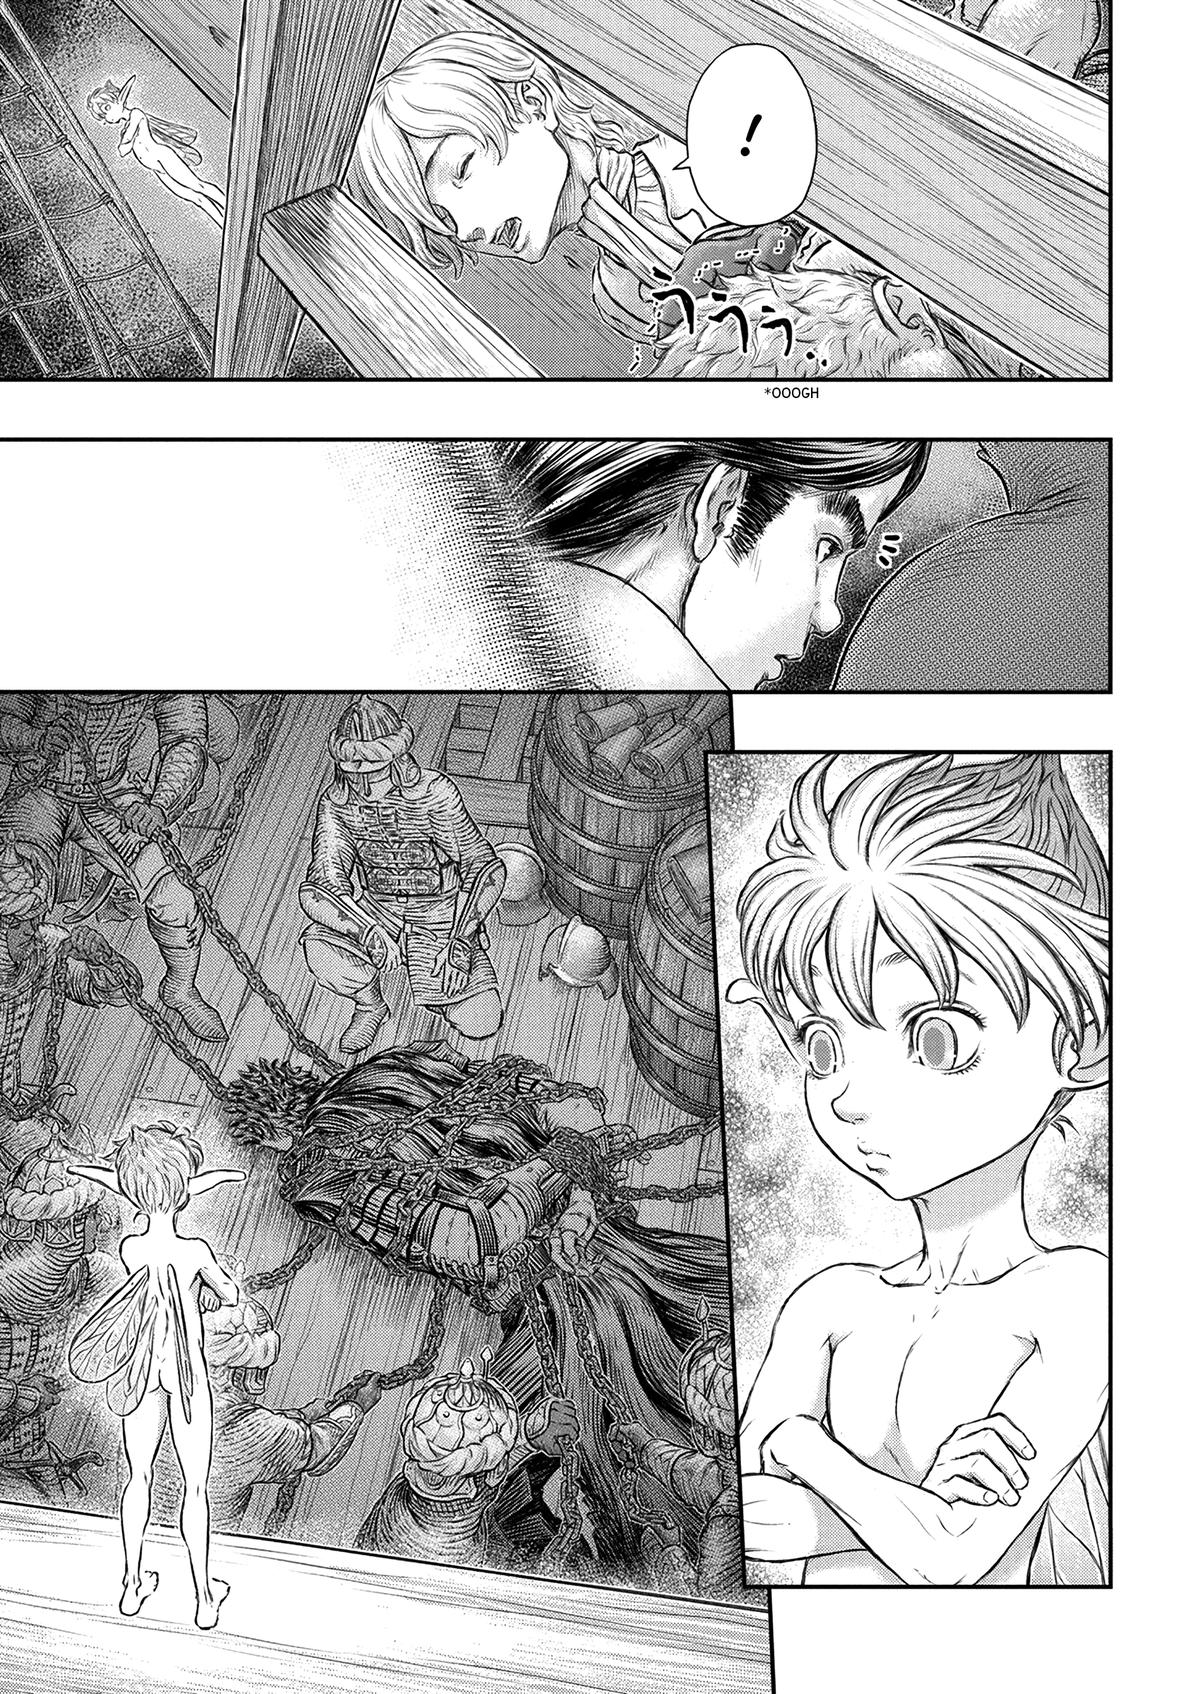 Berserk Manga Chapter 375 image 15